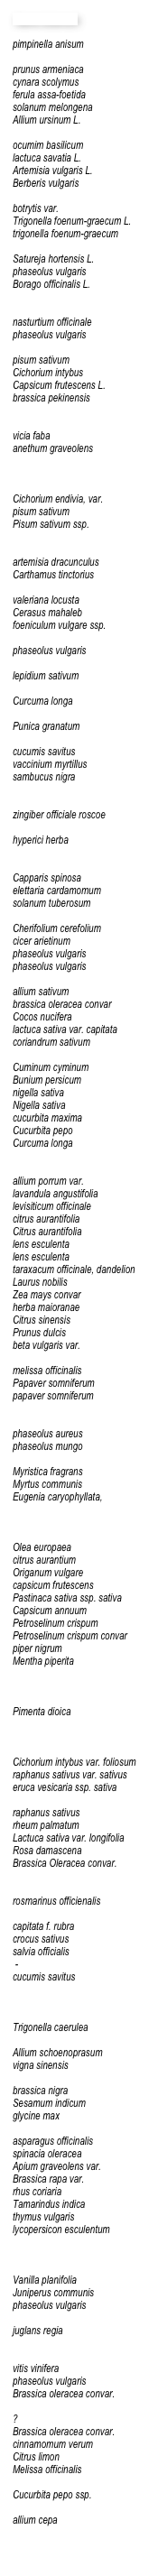 Name botanisch

pimpinella anisum prunus armeniacacynara scolymusferula assa-foetidasolanum melongenaAllium ursinum L.ocumim basilicumlactuca savatia L.Artemisia vulgaris L.Berberis vulgarisbotrytis var.Trigonella foenum-graecum L.trigonella foenum-graecumSatureja hortensis L.phaseolus vulgarisBorago officinalis L.nasturtium officinalephaseolus vulgarispisum sativumCichorium intybusCapsicum frutescens L.brassica pekinensisvicia fabaanethum graveolensCichorium endivia, var.pisum sativumPisum sativum ssp.artemisia dracunculusCarthamus tinctoriusvaleriana locustaCerasus mahalebfoeniculum vulgare ssp.phaseolus vulgarislepidium sativumCurcuma longaPunica granatumcucumis savitusvaccinium myrtillussambucus nigrazingiber officiale roscoehyperici herbaCapparis spinosaelettaria cardamomumsolanum tuberosumCherifolium cerefoliumcicer arietinumphaseolus vulgarisphaseolus vulgarisallium sativumbrassica oleracea convarCocos nuciferalactuca sativa var. capitatacoriandrum sativumCuminum cyminumBunium persicumnigella sativaNigella sativacucurbita maximaCucurbita pepoCurcuma longaallium porrum var.lavandula angustifolialevisiticum officinalecitrus aurantifoliaCitrus aurantifolialens esculentalens esculentataraxacum officinale, dandelionLaurus nobilisZea mays convarherba maioranaeCitrus sinensisPrunus dulcisbeta vulgaris var.melissa officinalisPapaver somniferumpapaver somniferumphaseolus aureusphaseolus mungoMyristica fragransMyrtus communisEugenia caryophyllata, 
Olea europaeacitrus aurantiumOriganum vulgarecapsicum frutescensPastinaca sativa ssp. sativaCapsicum annuumPetroselinum crispumPetroselinum crispum convarpiper nigrumMentha piperitaPimenta dioica Cichorium intybus var. foliosumraphanus sativus var. sativuseruca vesicaria ssp. sativaraphanus sativusrheum palmatumLactuca sativa var. longifoliaRosa damascenaBrassica Oleracea convar.rosmarinus officienaliscapitata f. rubracrocus sativussalvia officialis -cucumis savitusTrigonella caeruleaAllium schoenoprasumvigna sinensisbrassica nigraSesamum indicumglycine maxasparagus officinalisspinacia oleraceaApium graveolens var.Brassica rapa var.rhus coriariaTamarindus indicathymus vulgarislycopersicon esculentumVanilla planifoliaJuniperus communisphaseolus vulgarisjuglans regiavitis viniferaphaseolus vulgarisBrassica oleracea convar. ?Brassica oleracea convar. 
cinnamomum verumCitrus limonMelissa officinalisCucurbita pepo ssp.allium cepa
